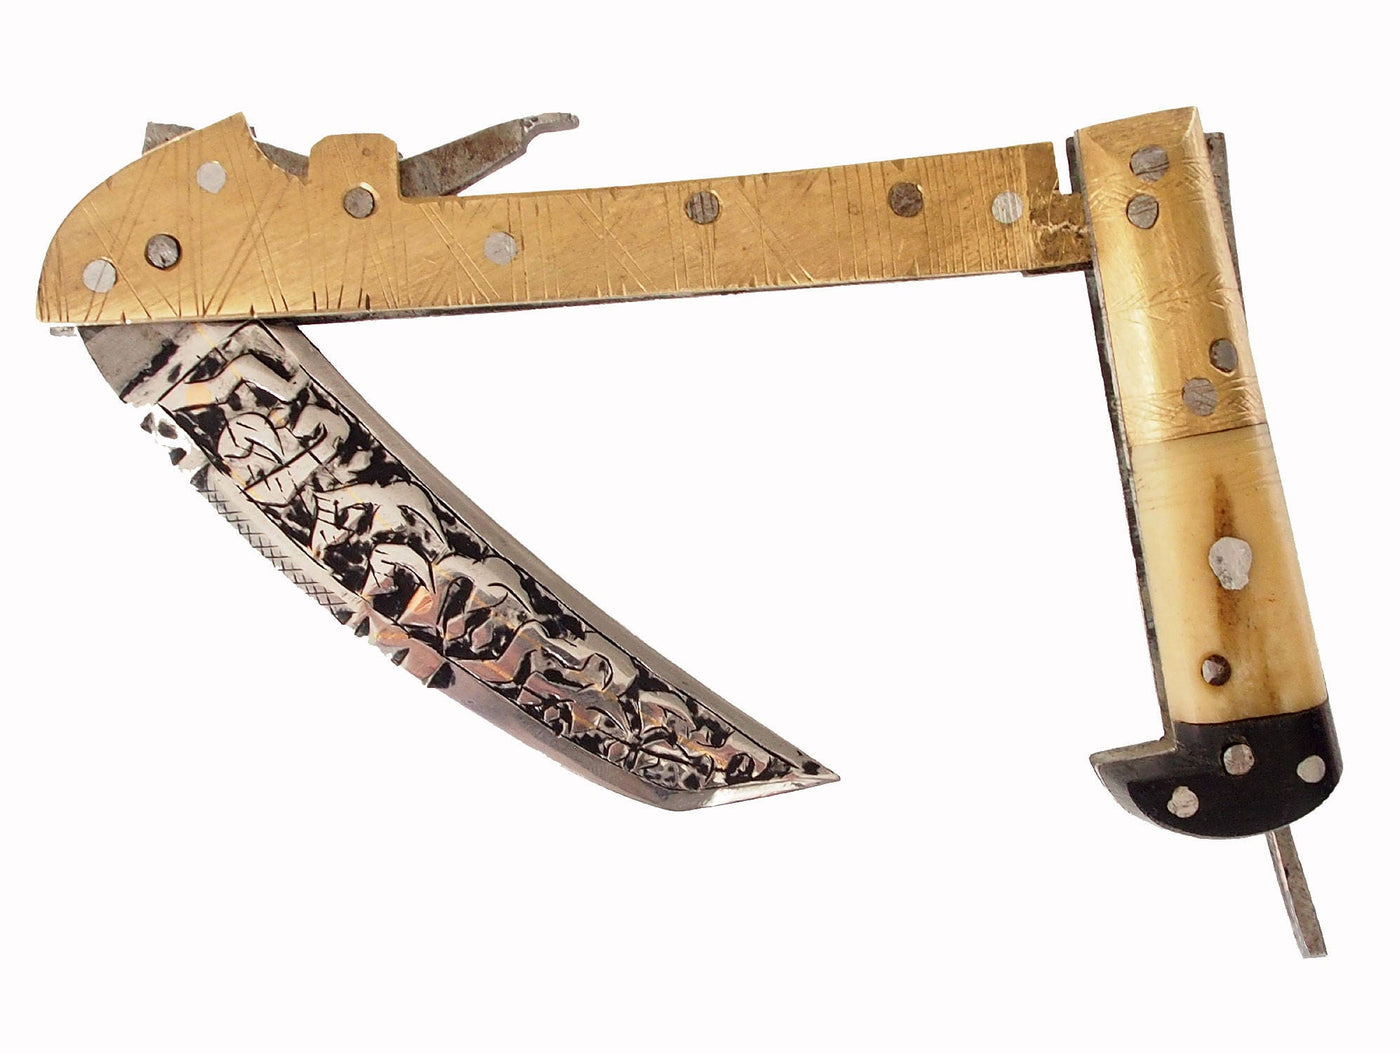 Messer Dolch choora dagger lohar Khybe messer Klappsense klappmesser Sense aus Afghanistan Pakistan  Nr:17/a  Orientsbazar   